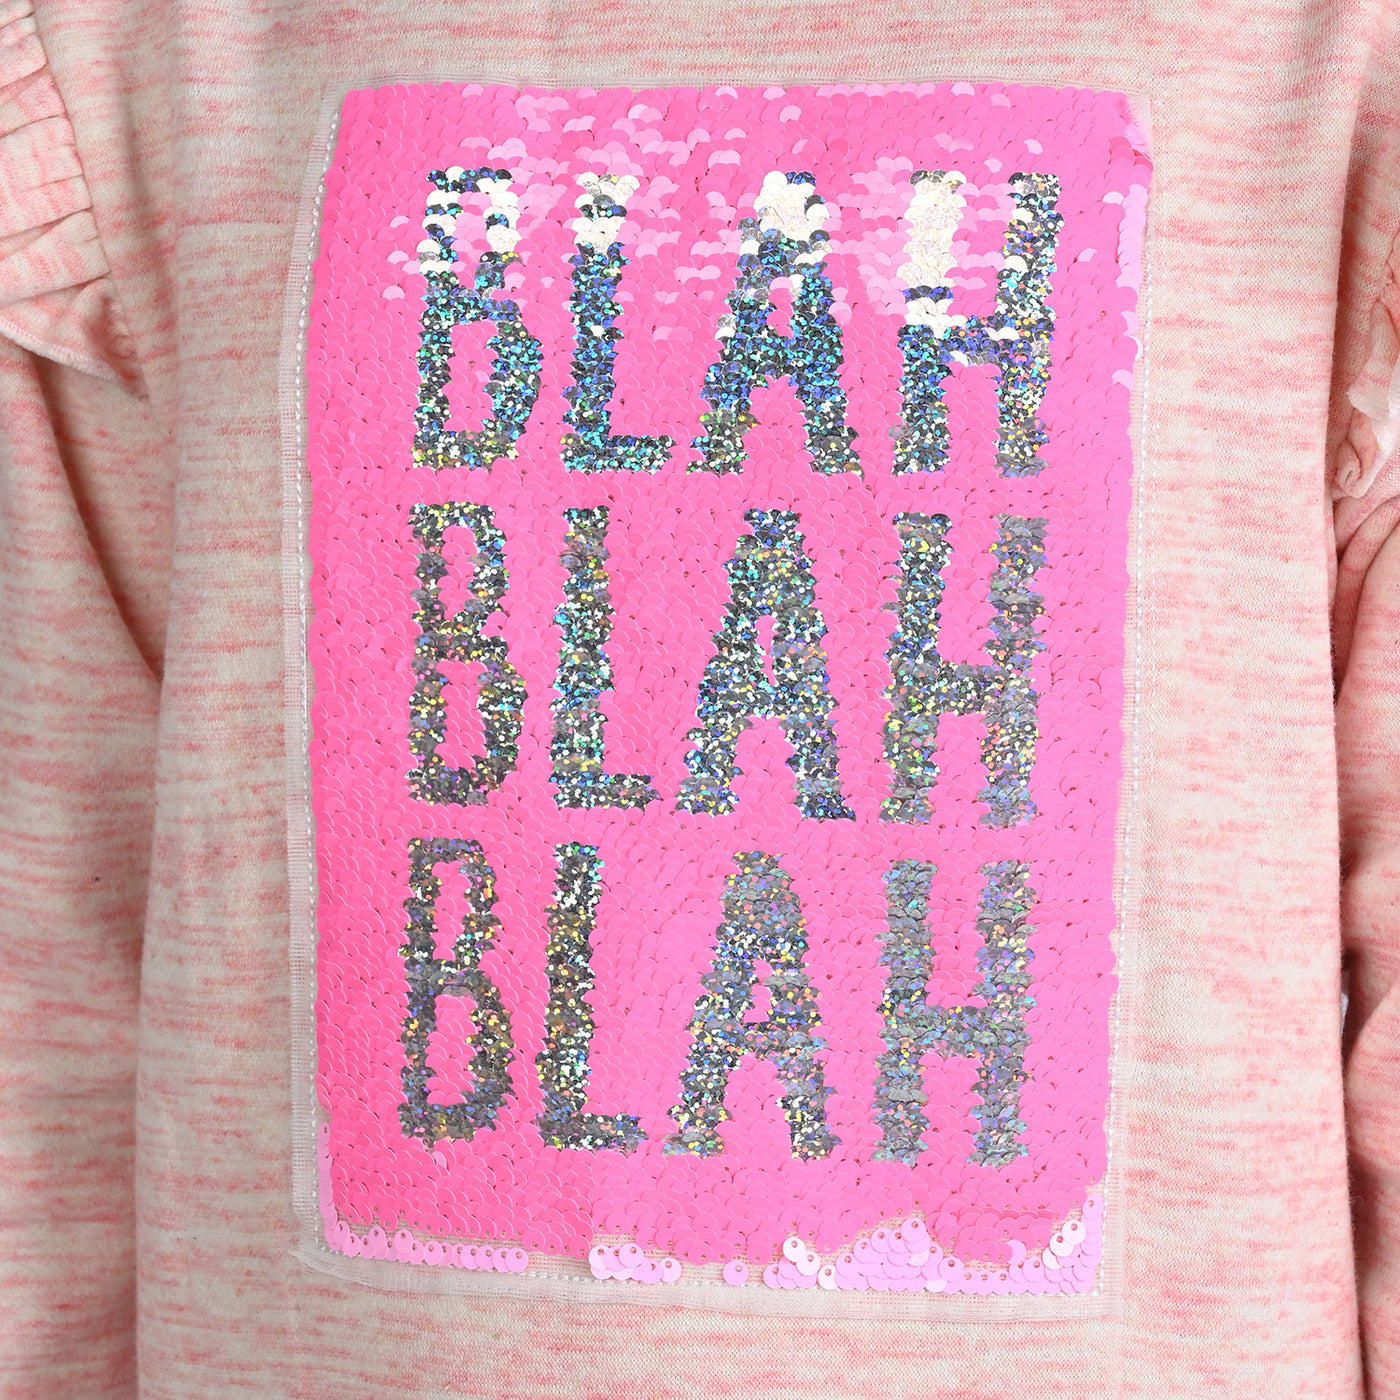 Girl's Fleece Sweatshirt Blah-Pink Mean